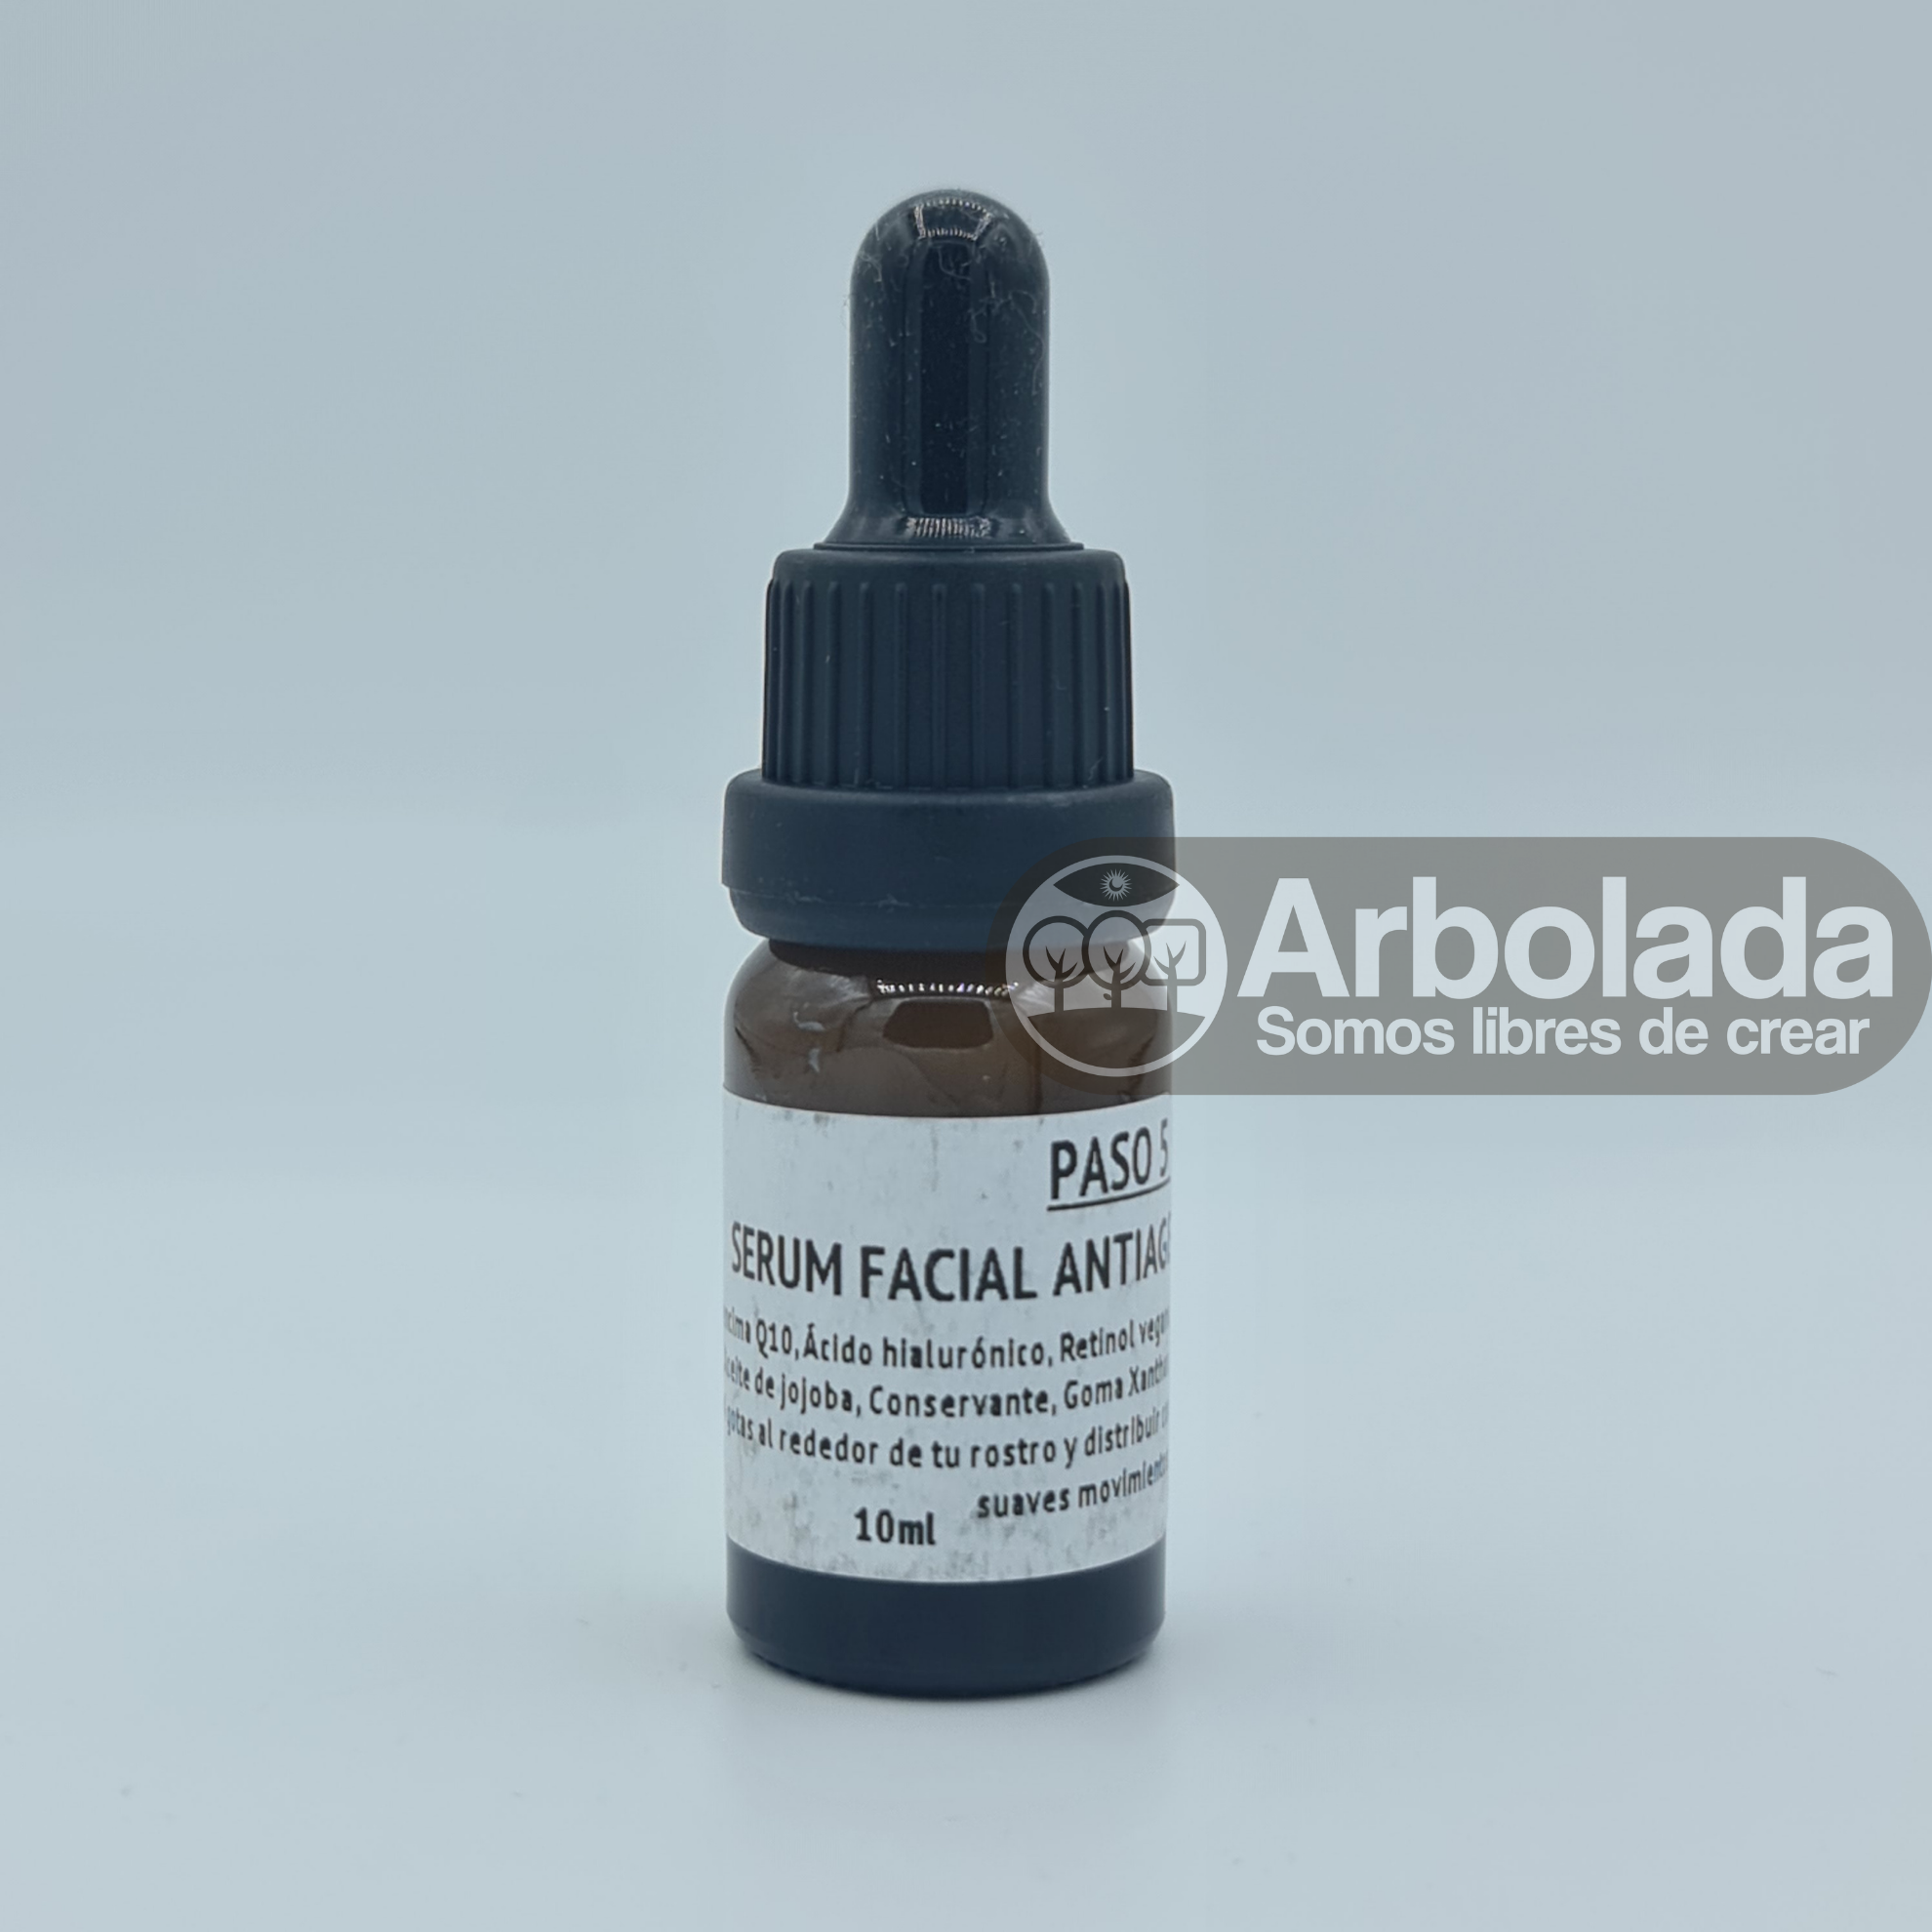 PASO 5 - Serum Facial Antiage 10mL 